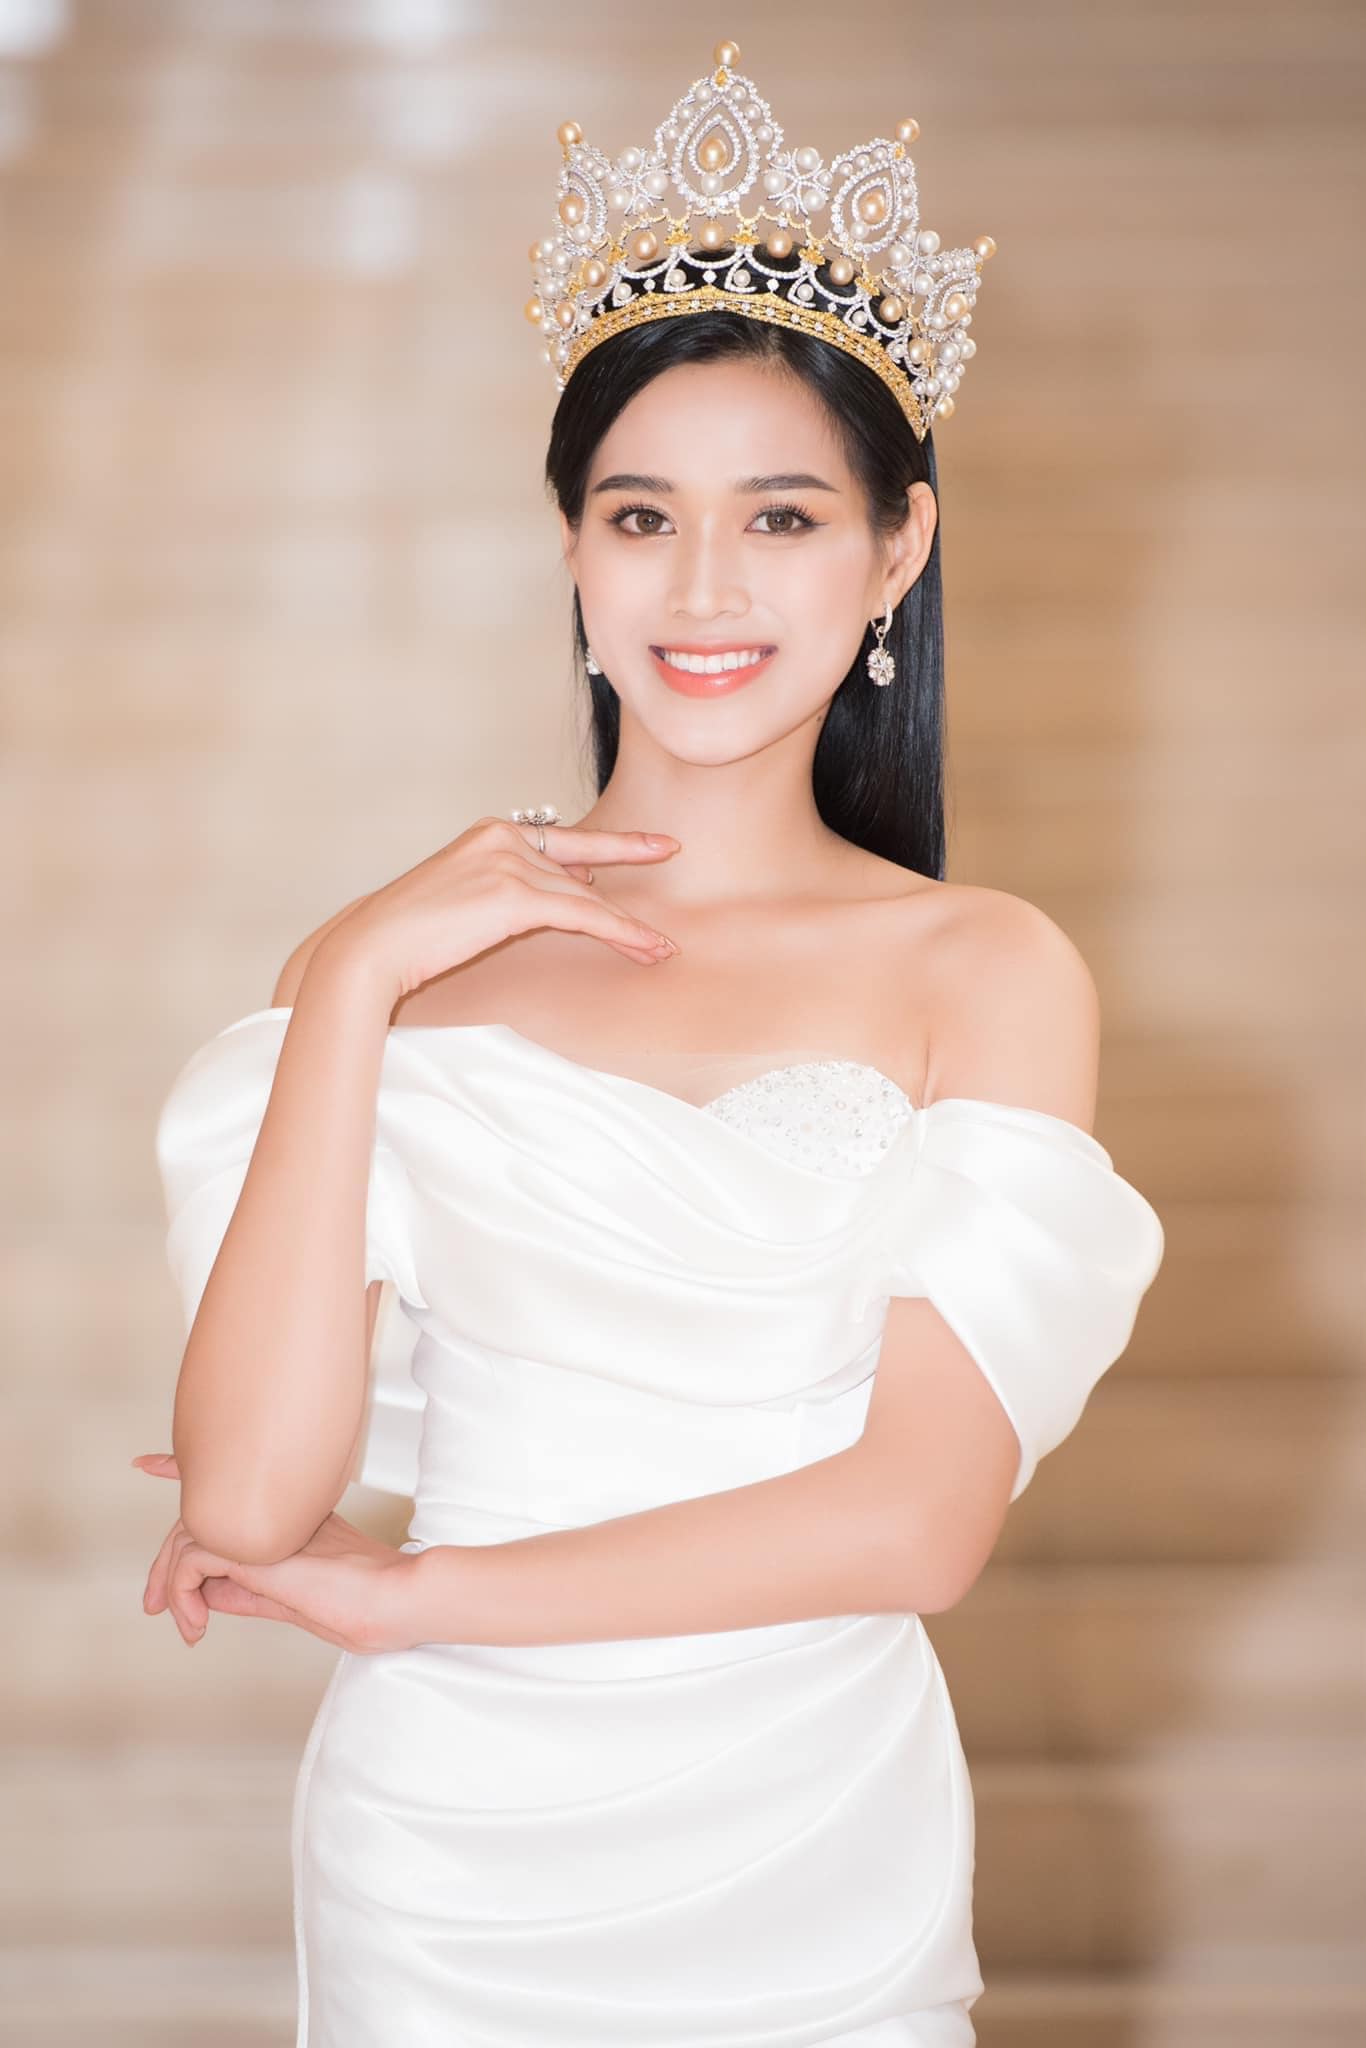 Đỗ Thị Hà là hoa hậu Việt Nam 2020, mở đầu một thập kỷ nhan sắc mới.